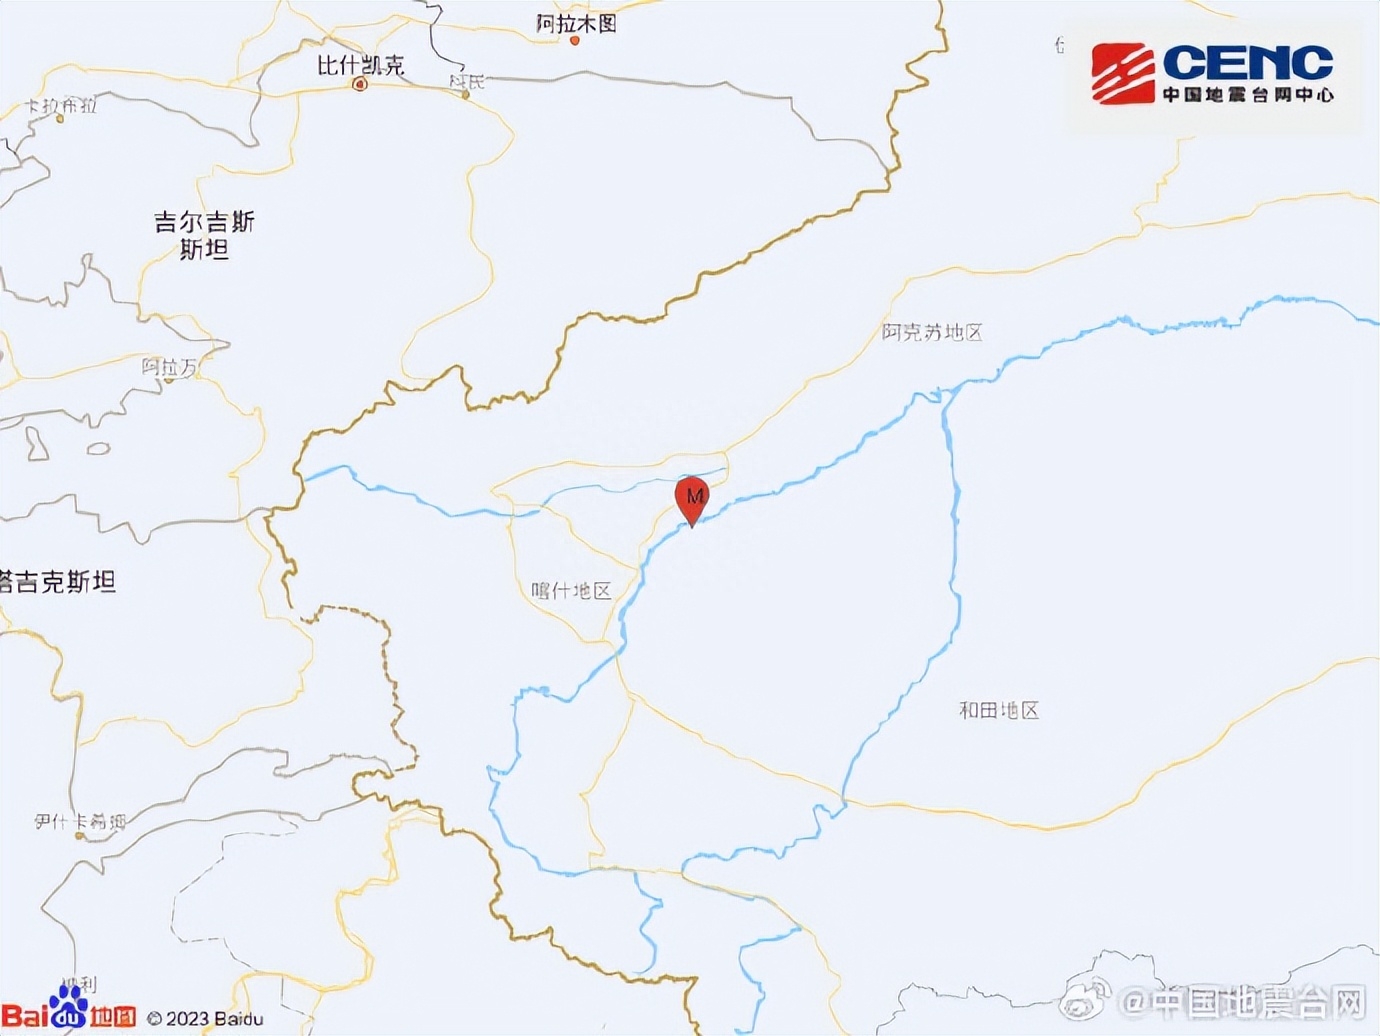 8月29日16时08分在新疆喀什地区巴楚县发生4.6级地震，震源深度10千米